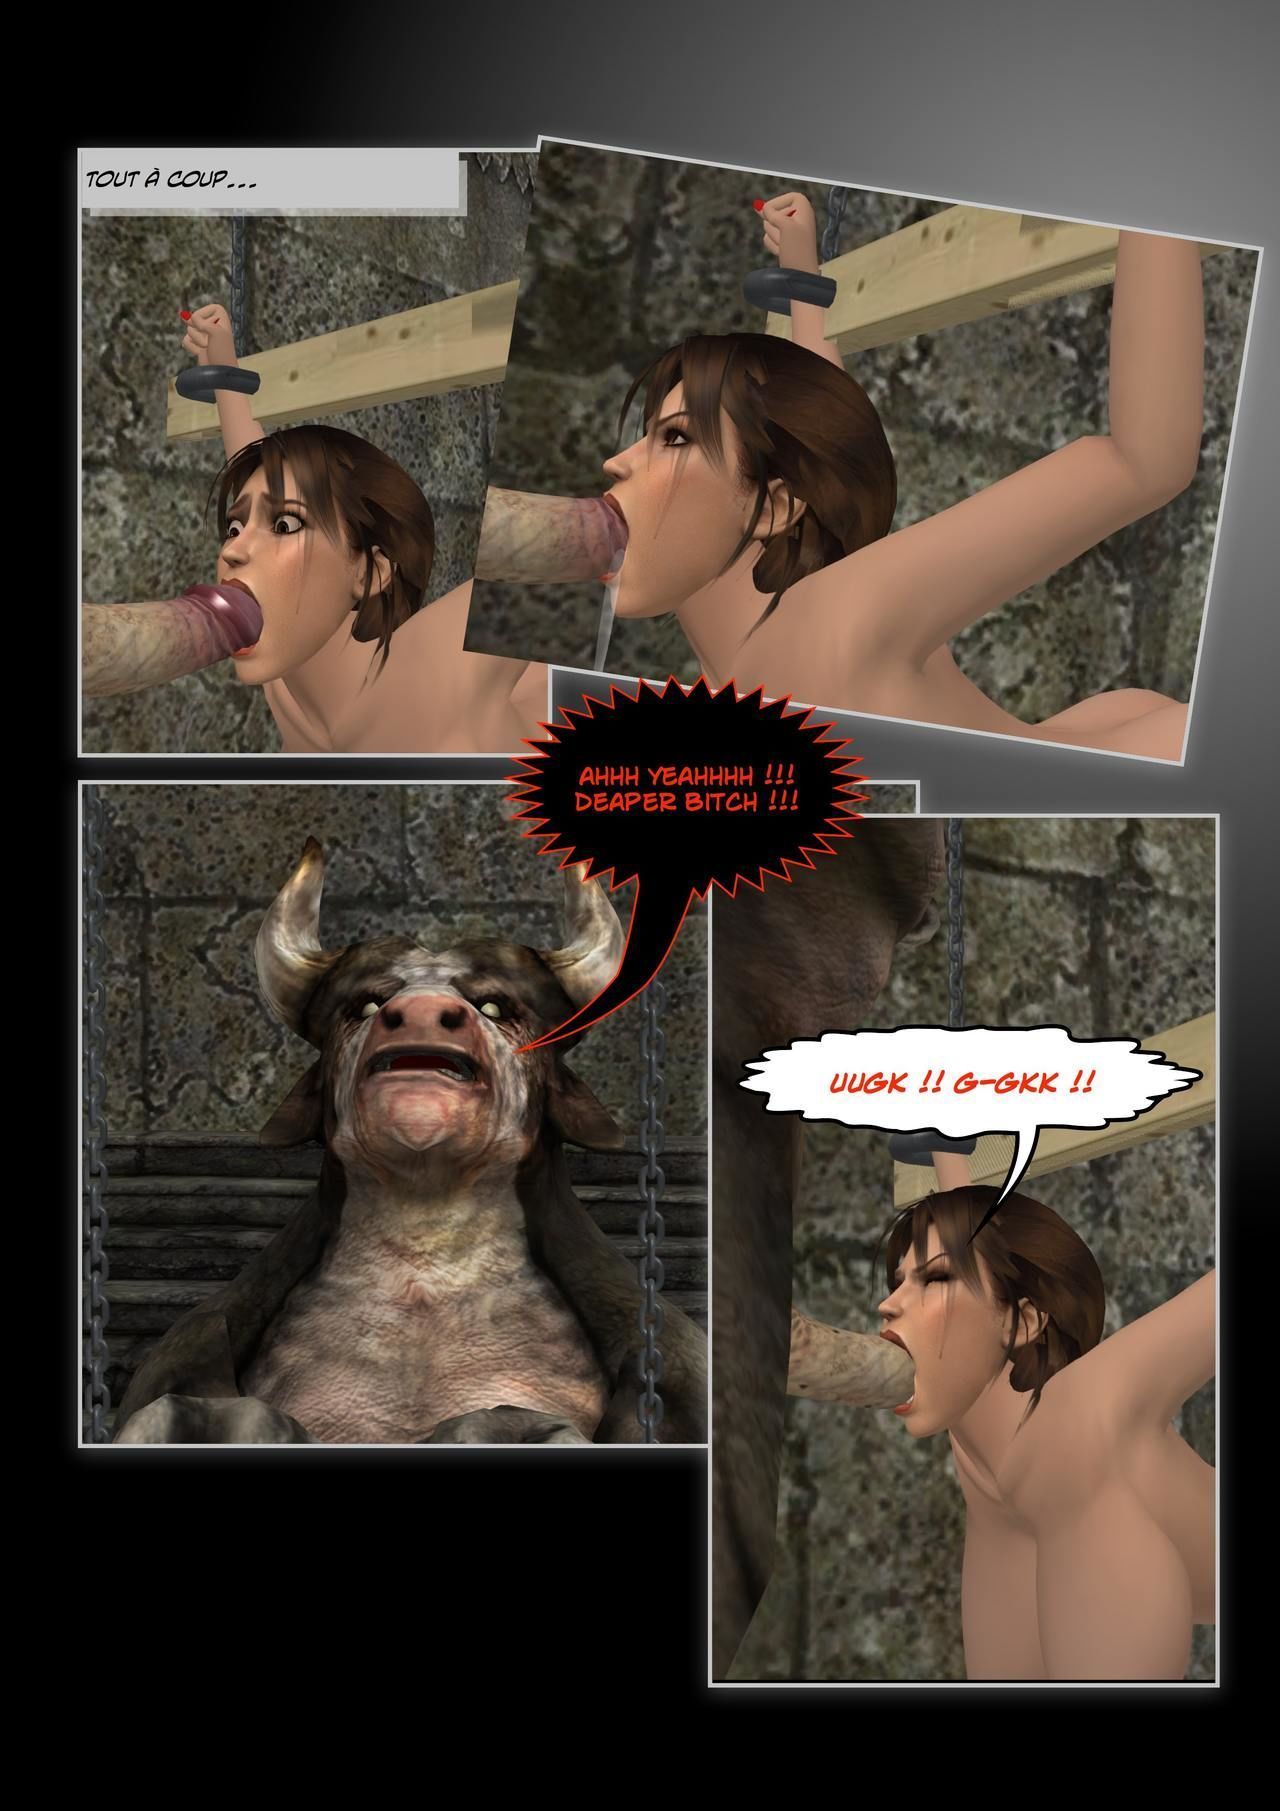 Lara Croft przeciwko w Minotaura w.i.p. część 2